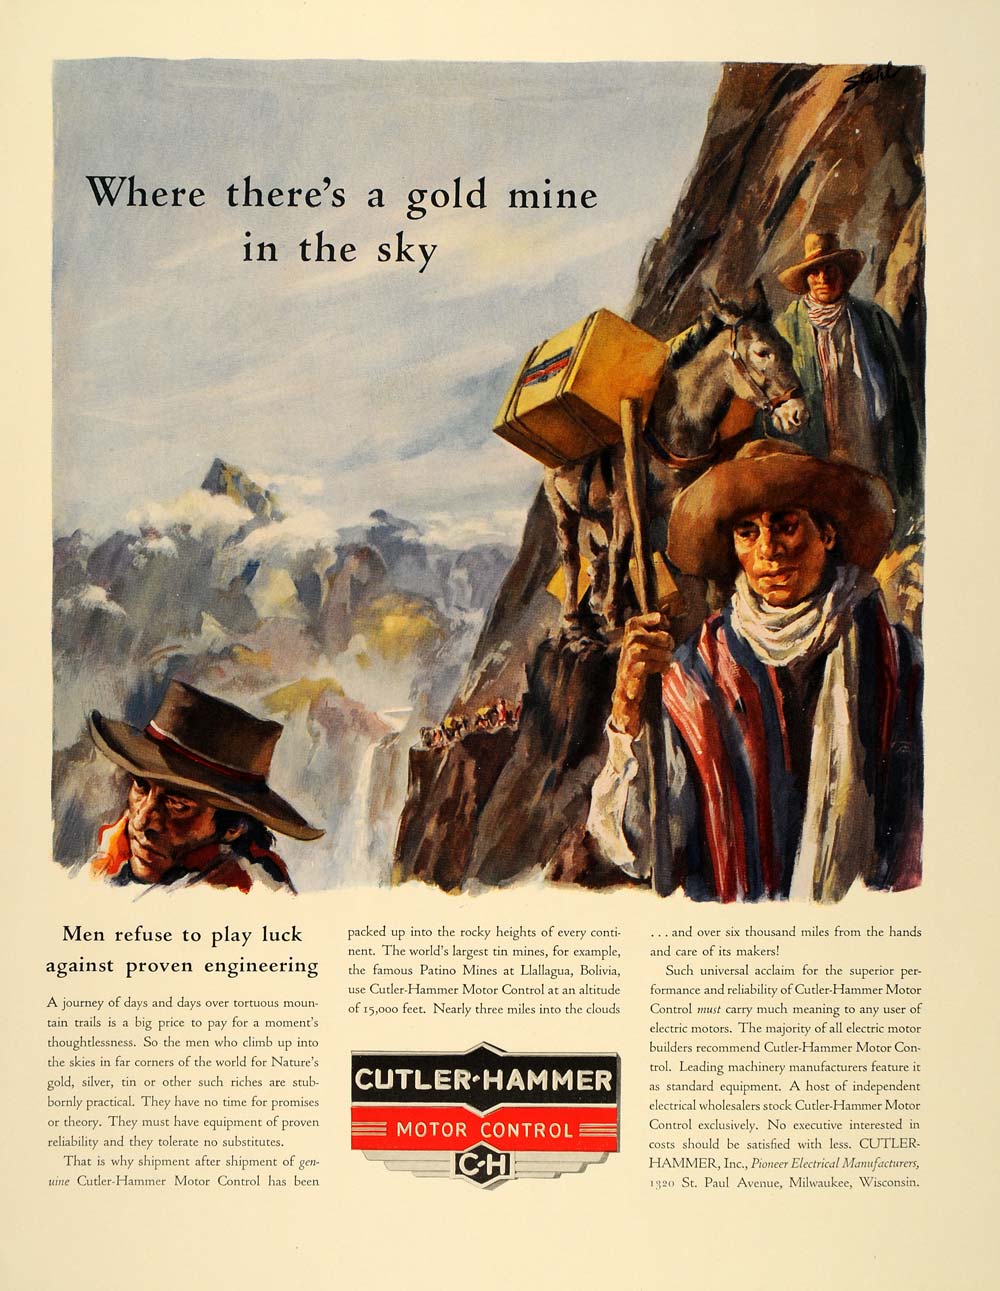 1939 Ad Cutler Hammer Platino Mines Bolivia Bolivians - ORIGINAL ADVERTISING FT6